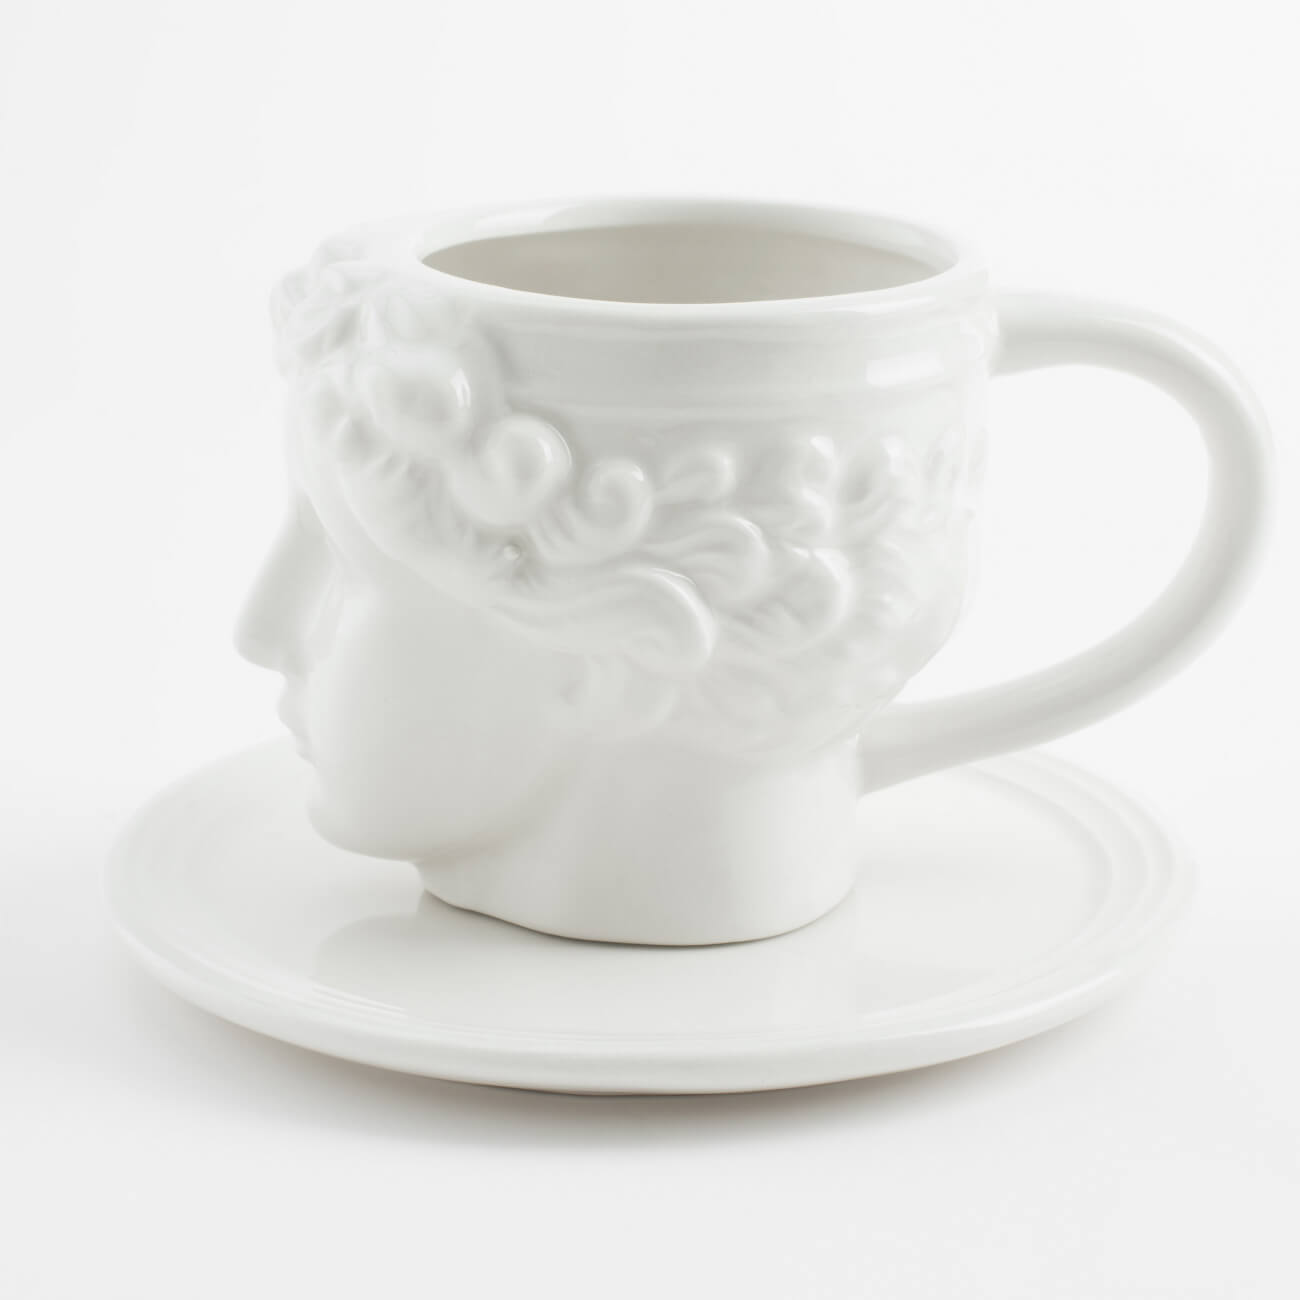 Пара чайная, 1 перс, 2 пр, 230 мл, керамика, молочная, Артемида, Olympus пара чайная для завтрака 1 перс 2 пр 420 мл керамика молочная ы магнолии magnolia